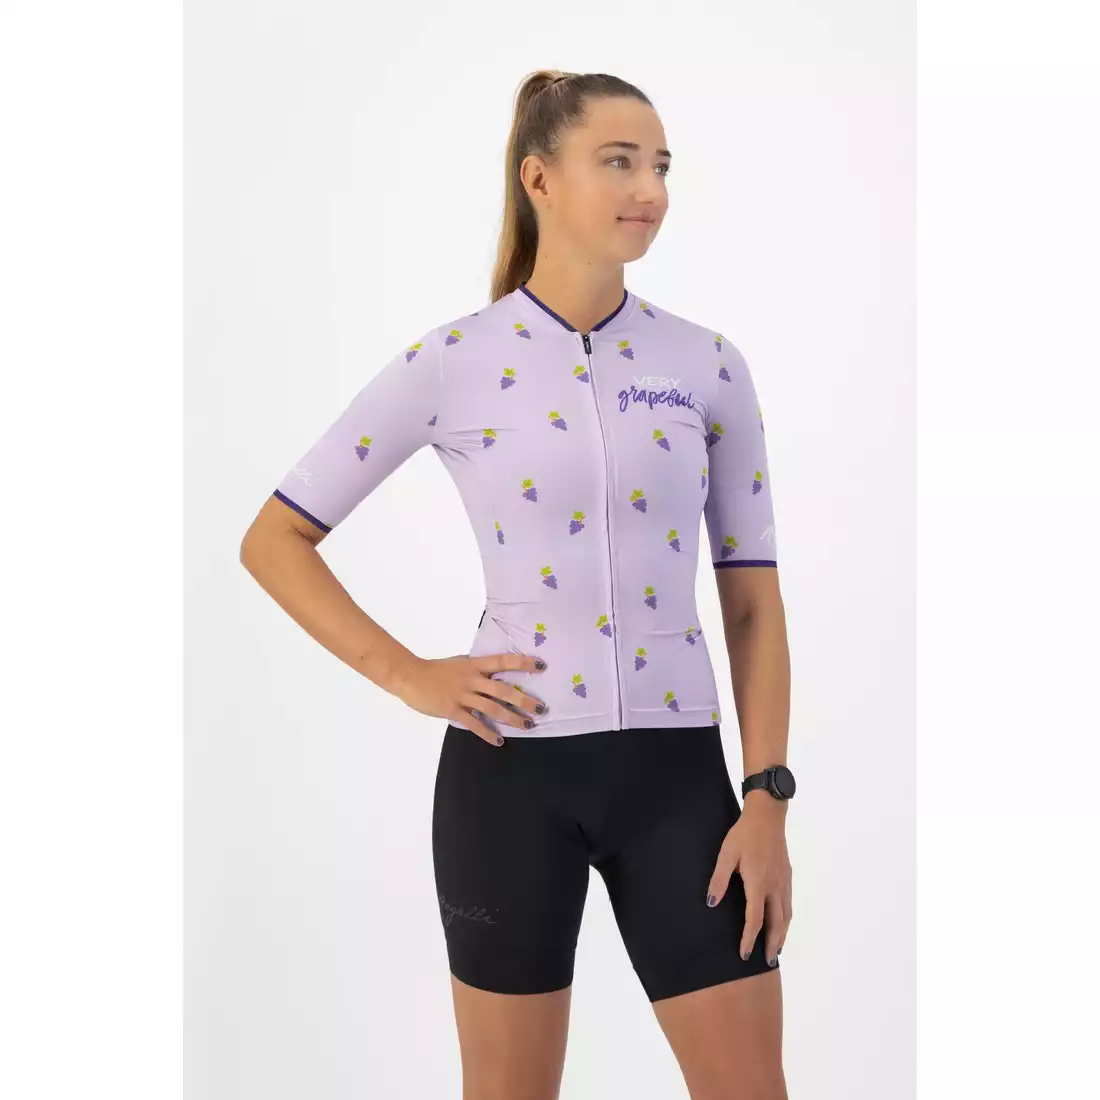 ROGELLI FRUITY Tricou de ciclism pentru femei, violet